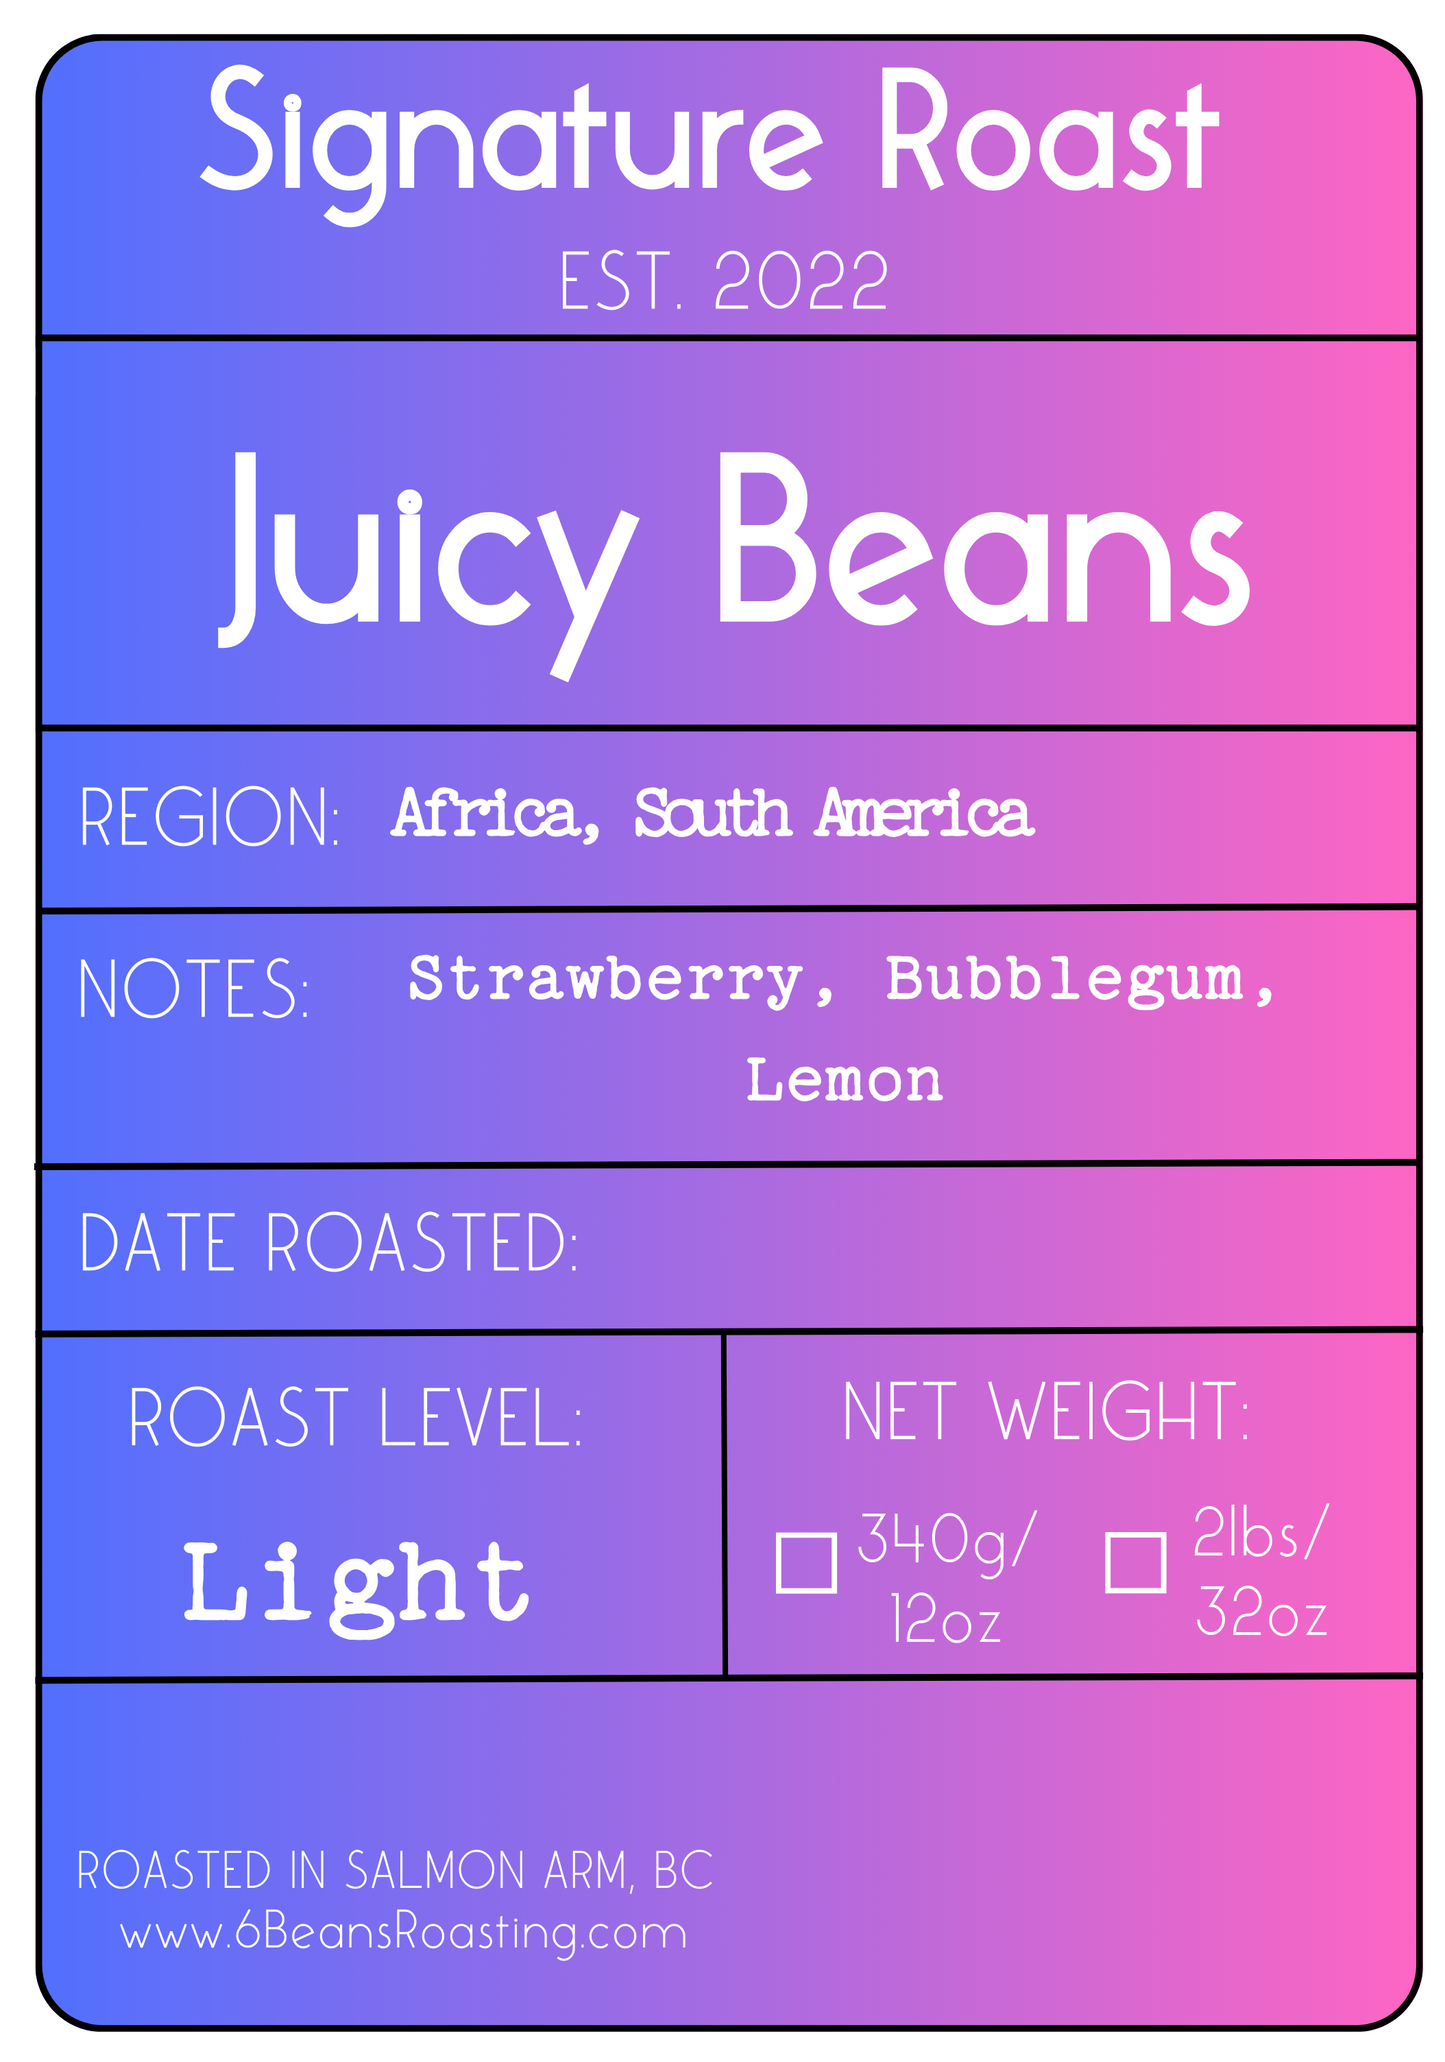 Juicy Beans